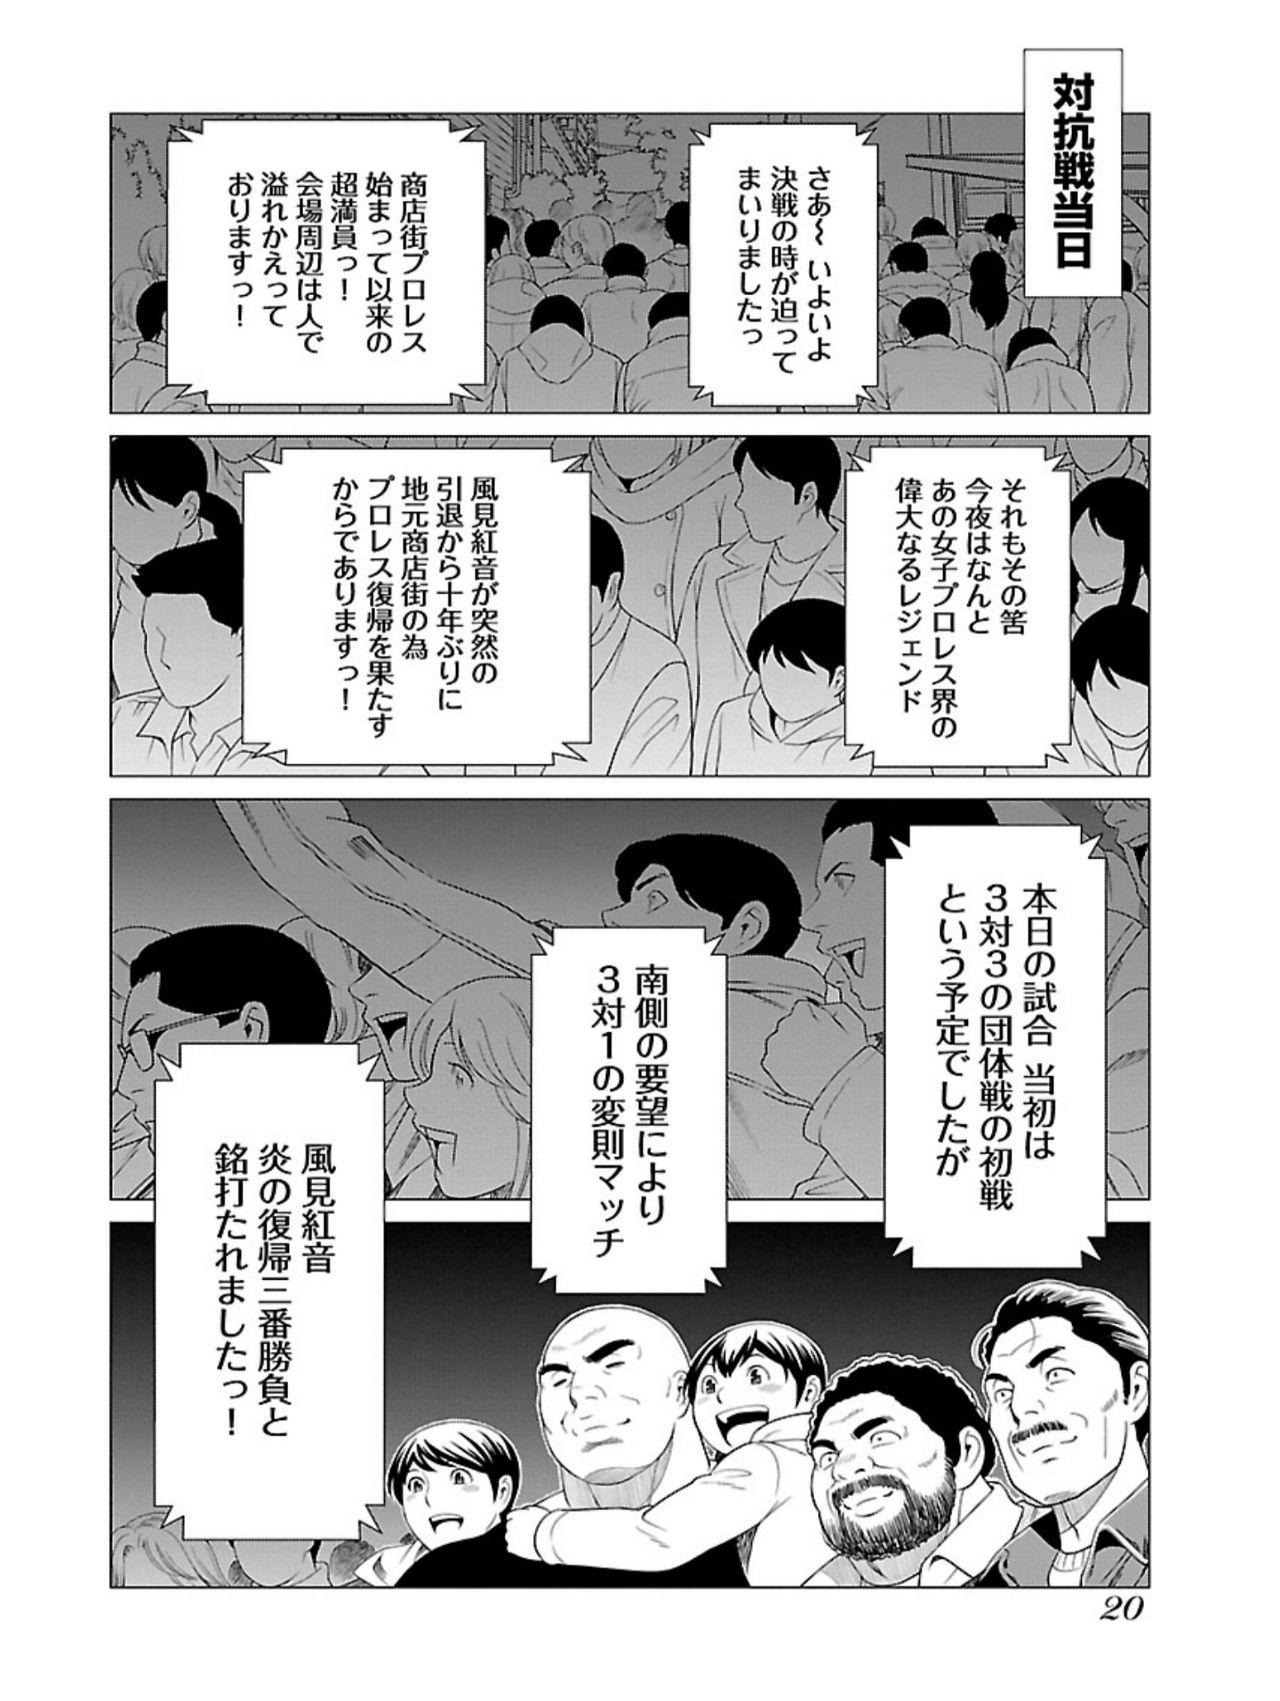 Bentenbashi Minamishouten Machi Joshi Puroresu Vol. 1 21